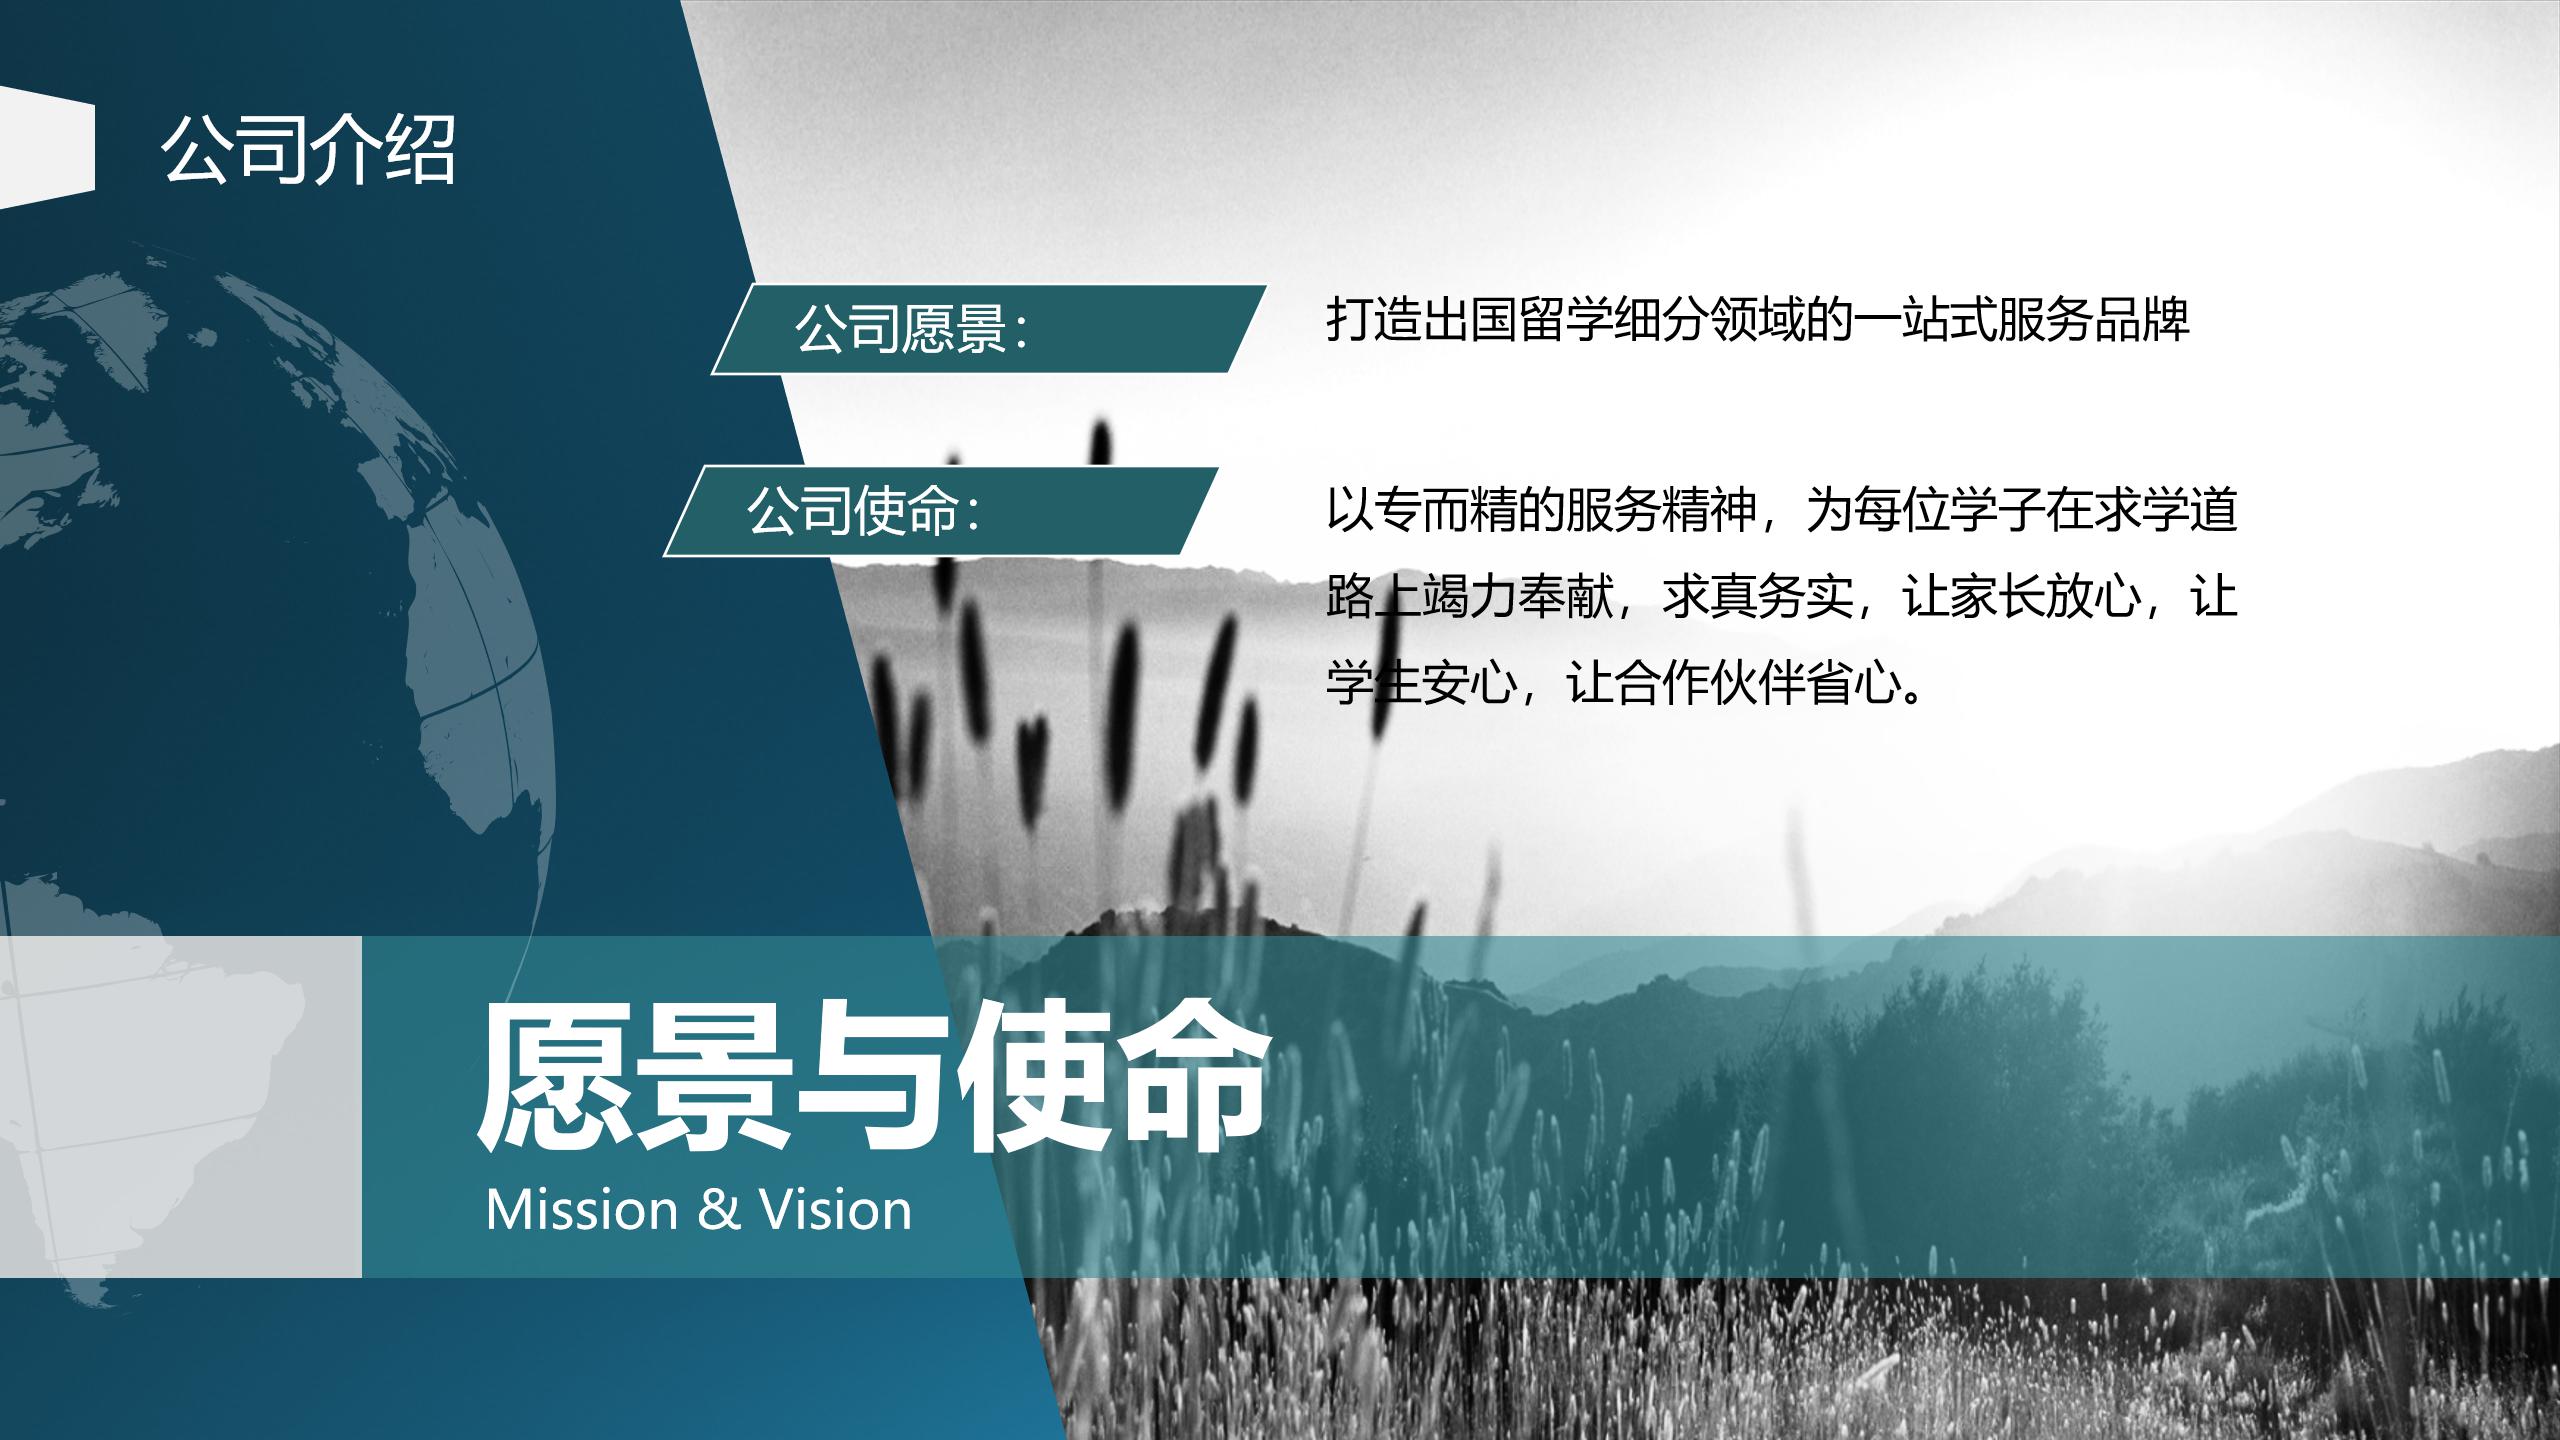 网站用上海博桥留学加盟说明 - 副本_05.jpg